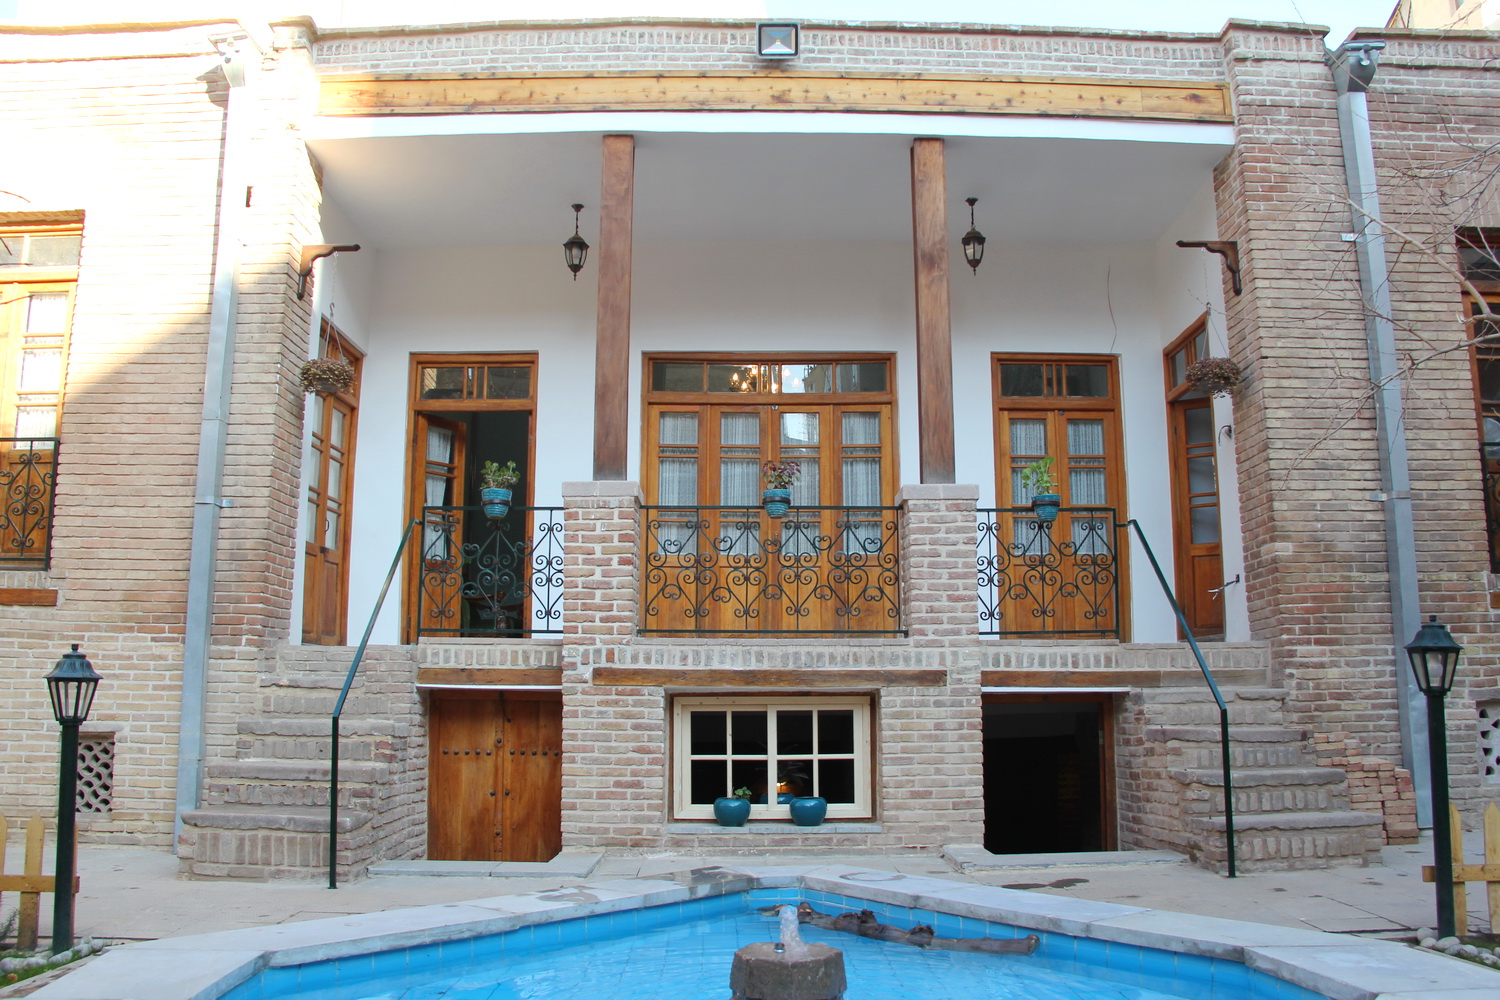 خانه تاریخی زعیم ،بنایی از دوره صفویه در قزوین